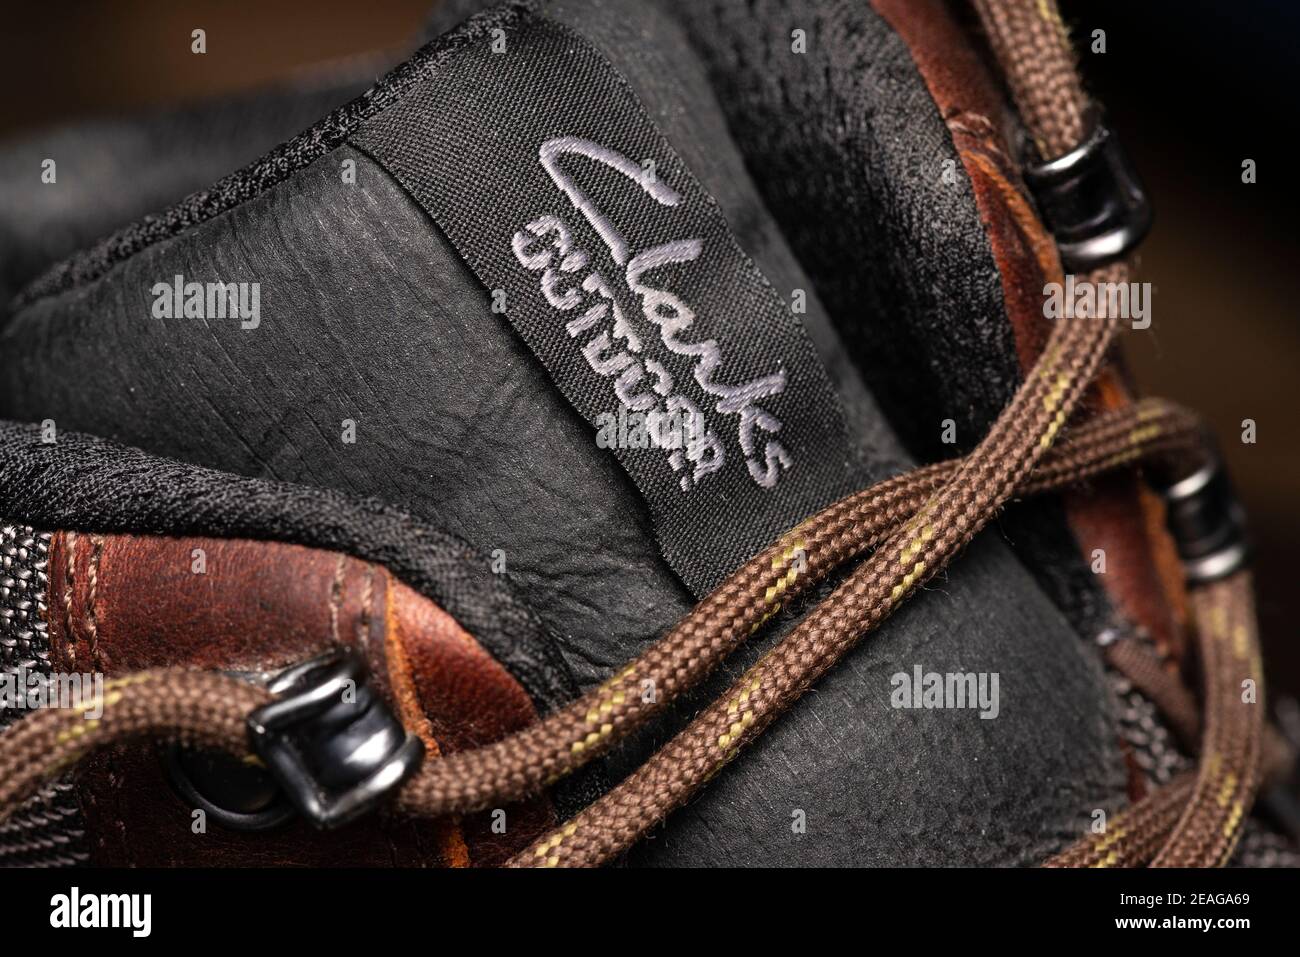 Clarks Schuhe. Clarks Outdoor Label auf Gore-Tex wasserdichten braunen  Leder Herren Wanderschuhen aus nächster Nähe Stockfotografie - Alamy